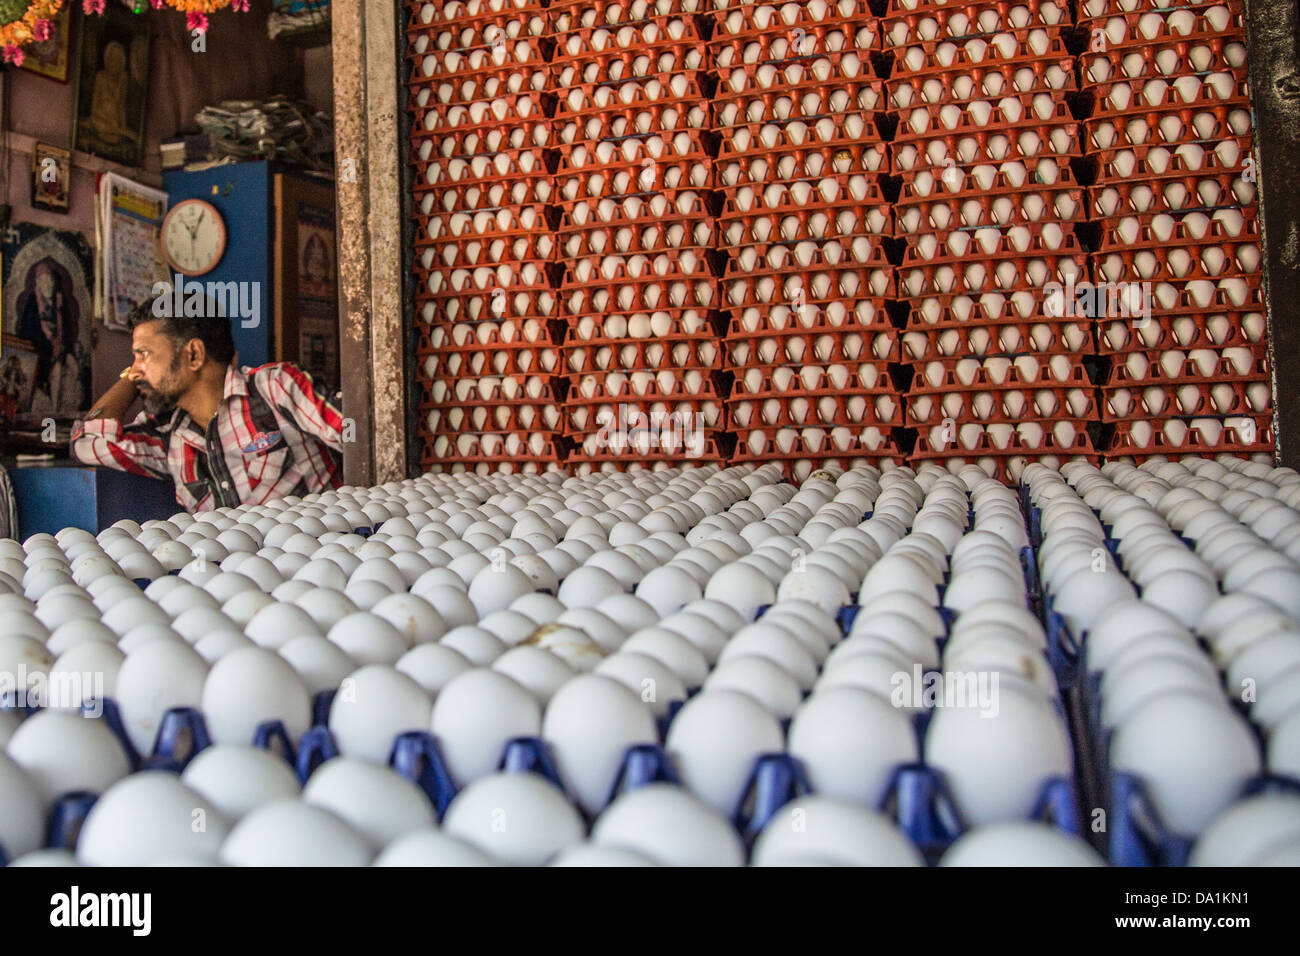 Egg vendor, Crawford Market, Mumbai, India Stock Photo